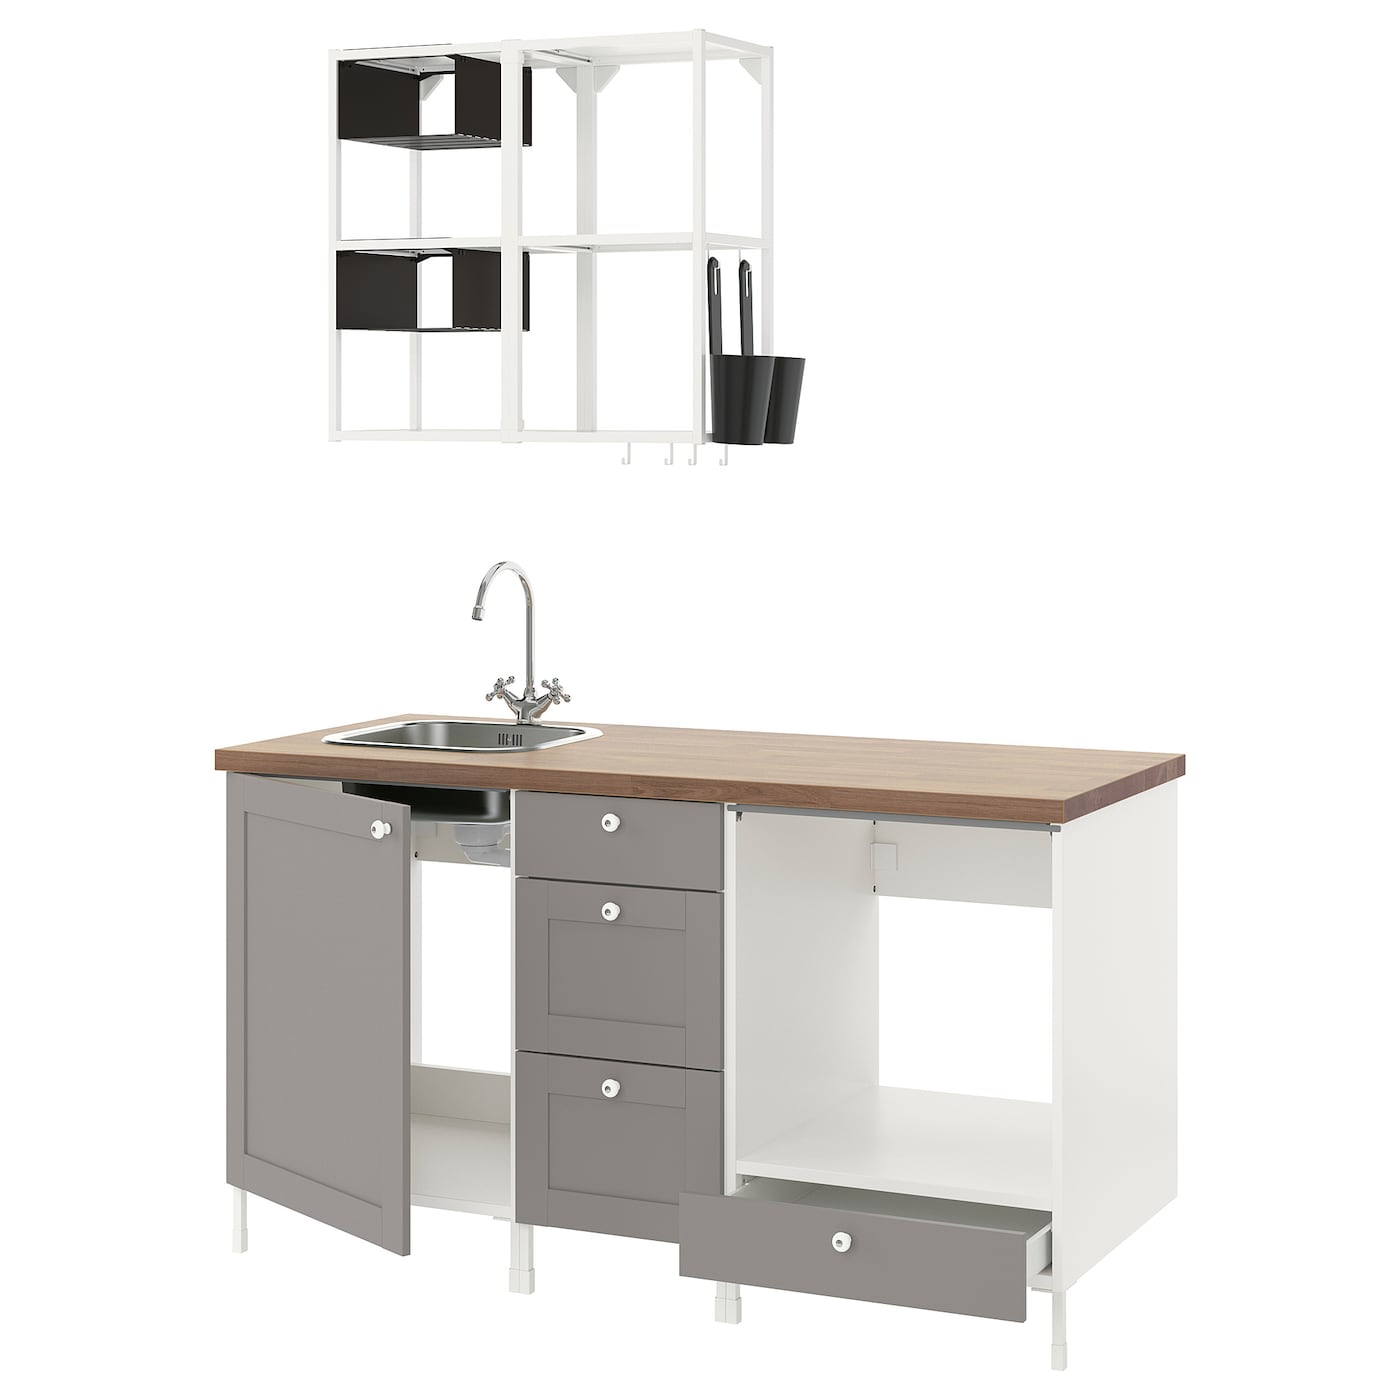 Комбинация шкафов для прачечной и кухни - ENHET  IKEA/ ЭНХЕТ ИКЕА, 163x63,5x222 см, белый/серый/бежевый